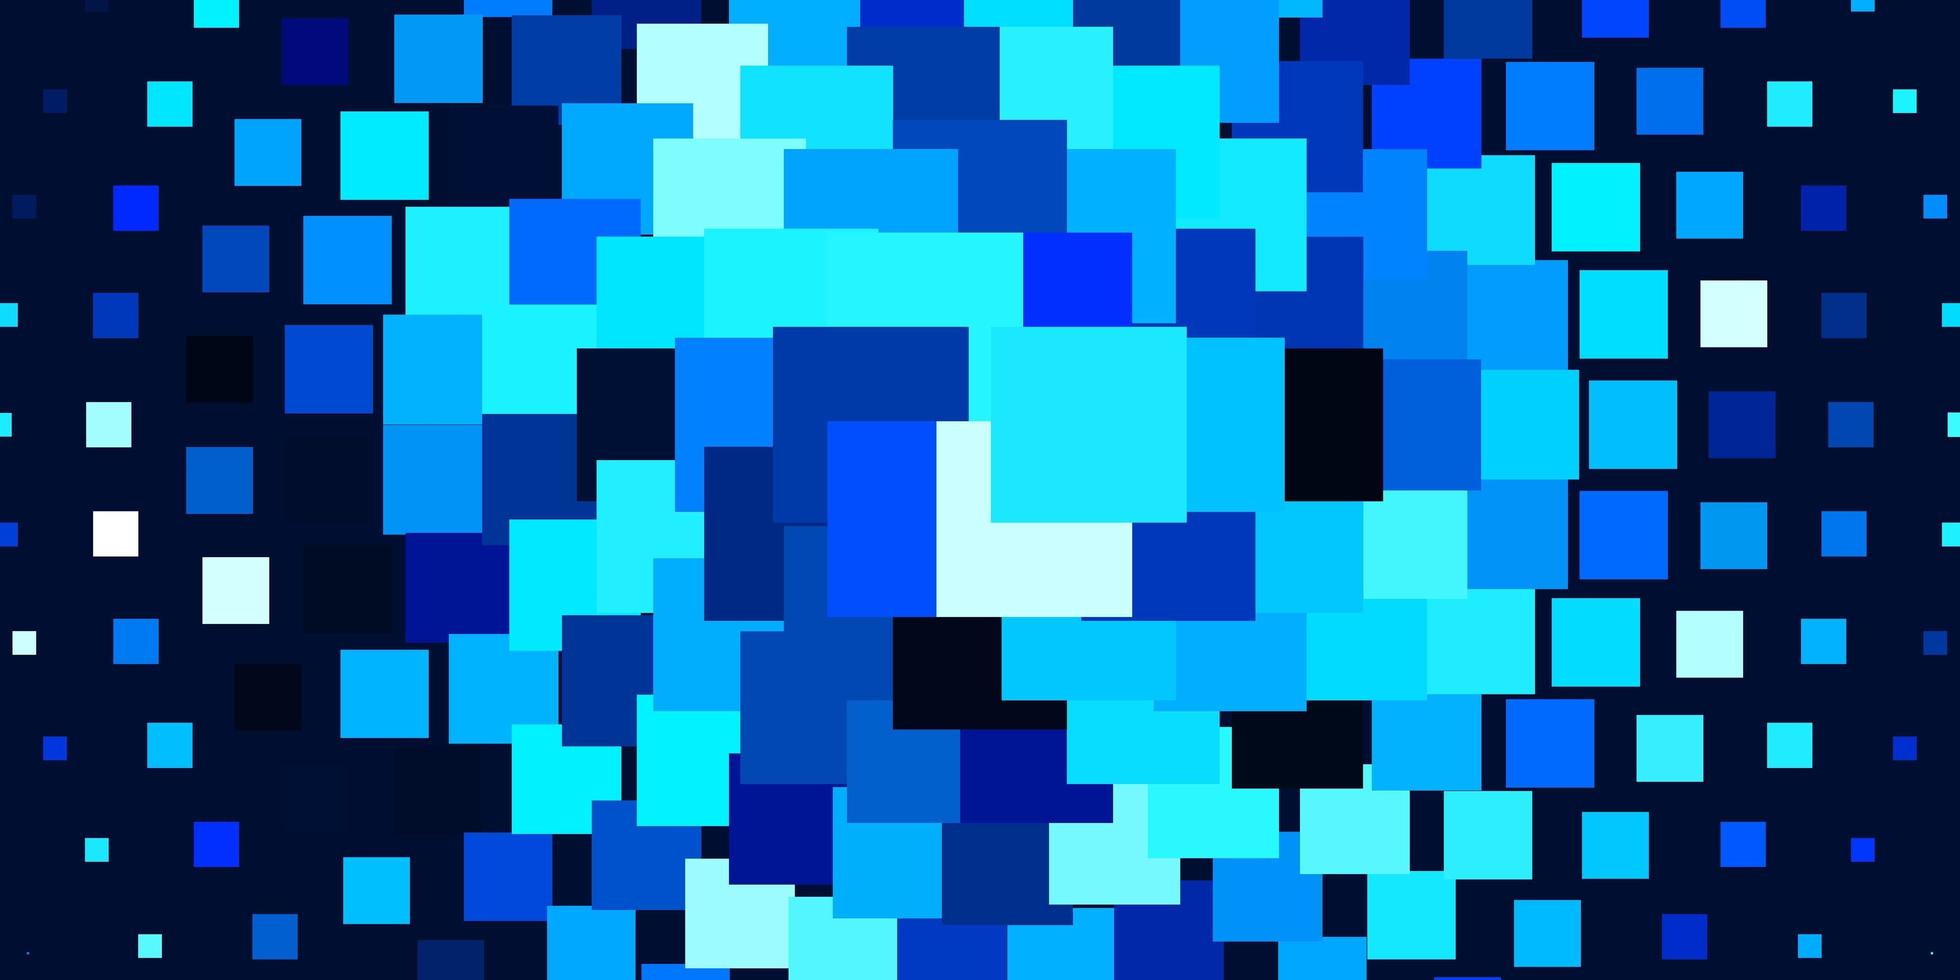 lichtblauwe vectorachtergrond in veelhoekige stijl. kleurrijke illustratie met gradiëntrechthoeken en vierkanten. patroon voor websites, bestemmingspagina's. vector